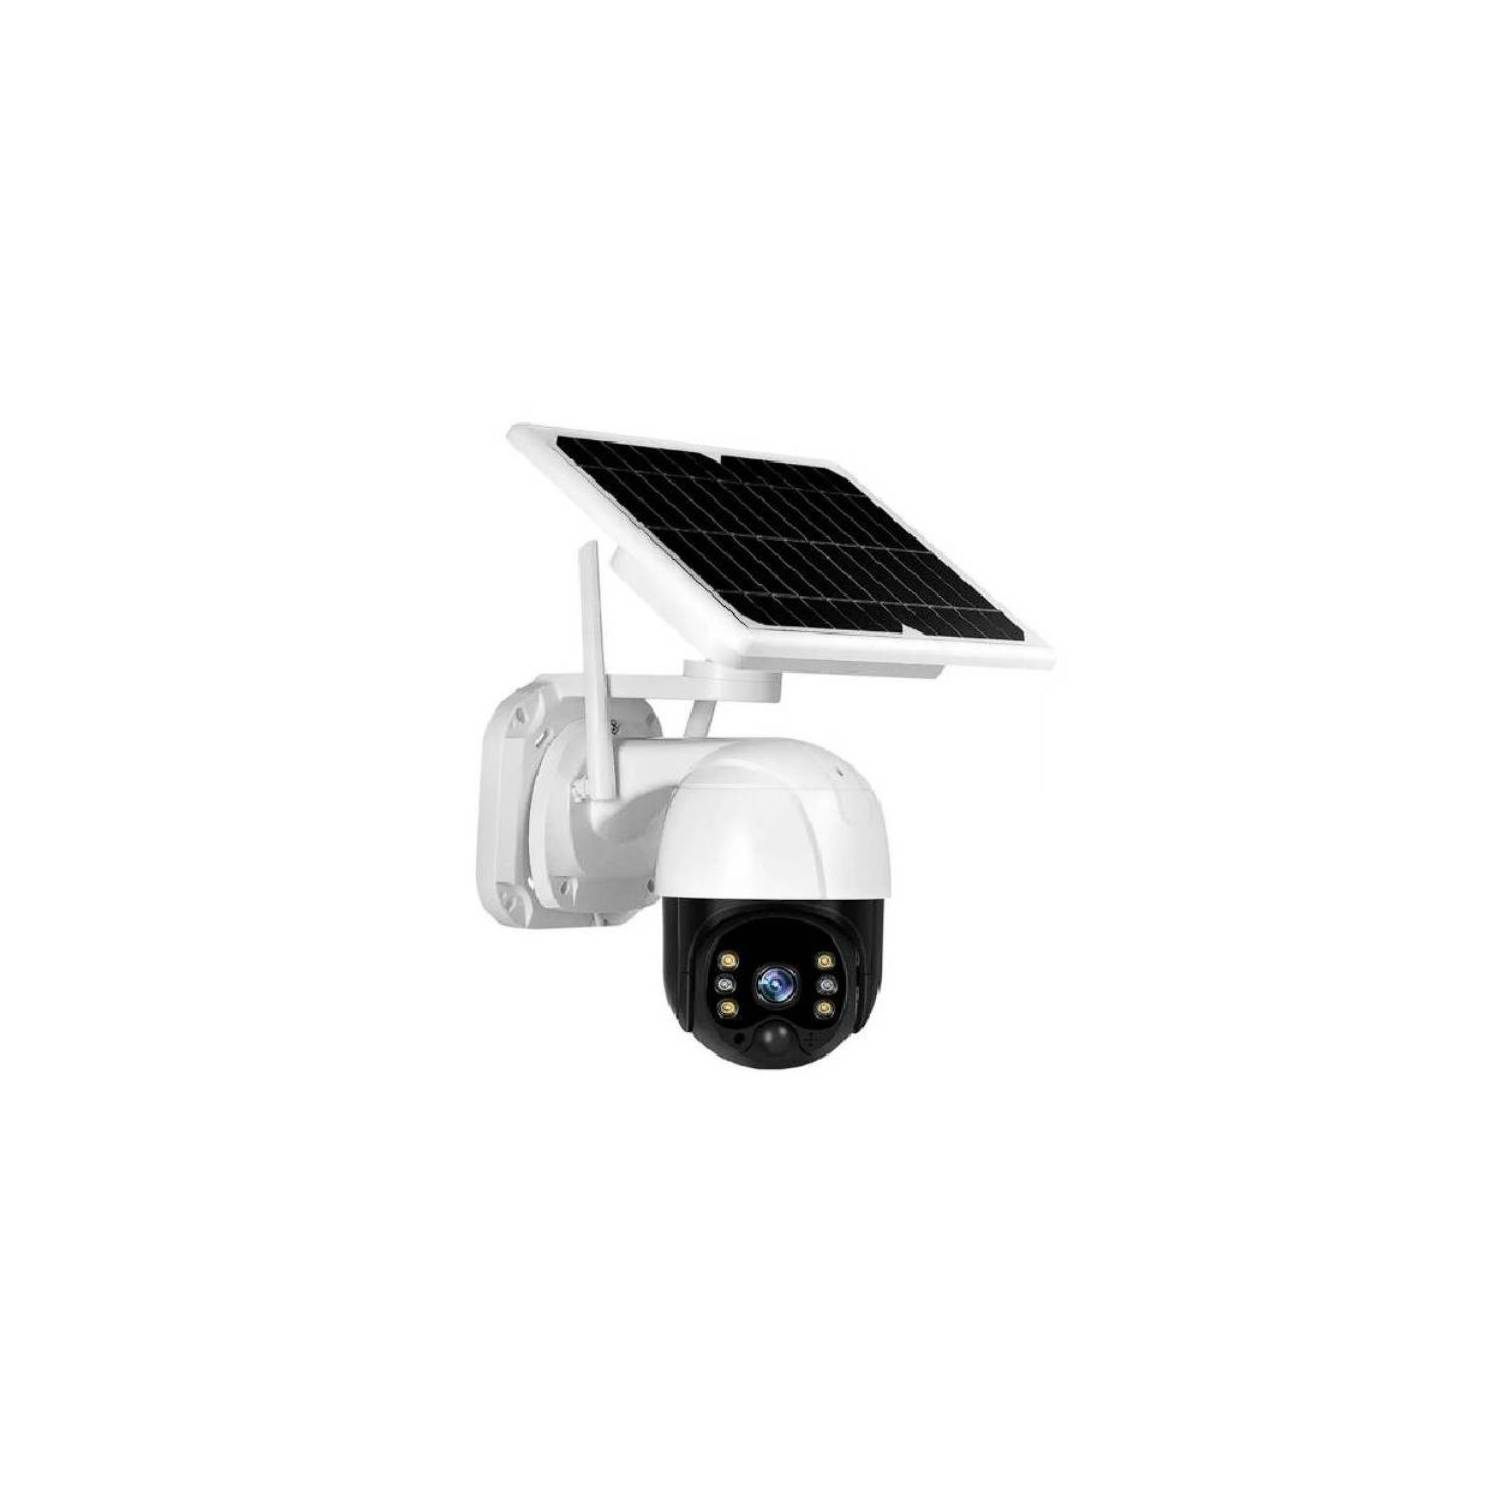 GENERICO Camara Ip Solar 360° Seguridad Wifi Exterior Hd 1080p